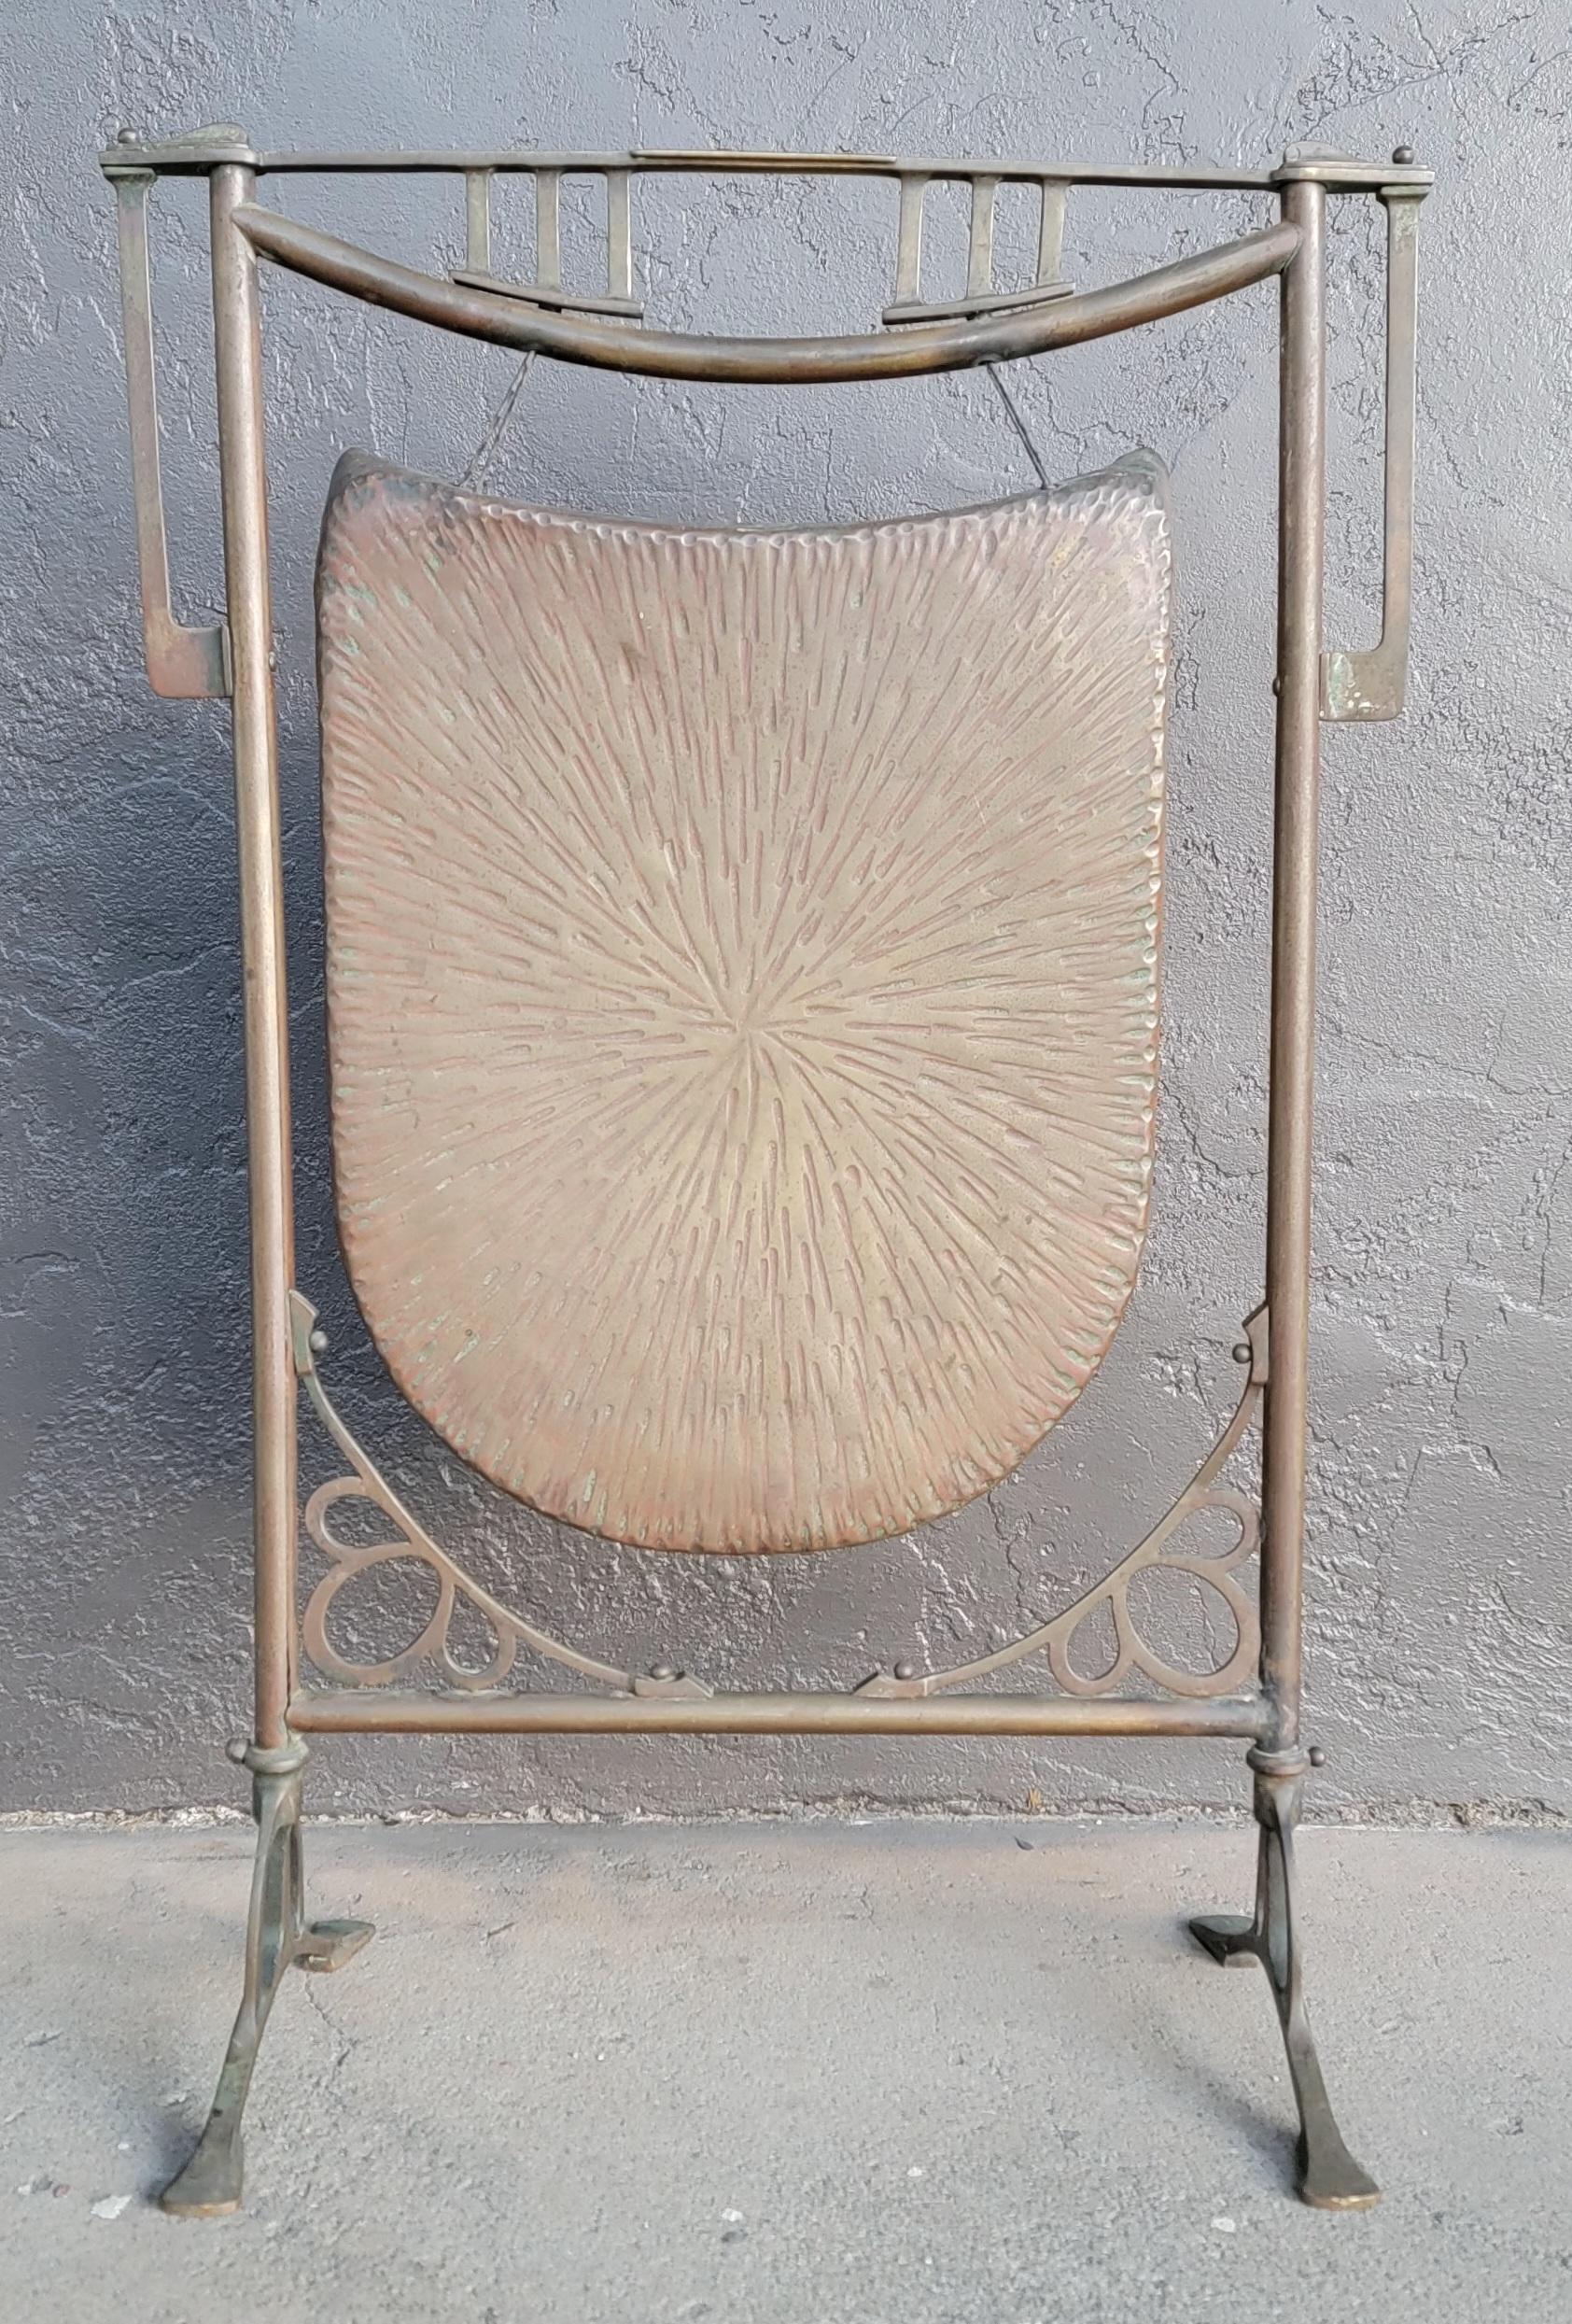 Ein Jugendstil / Arts & Crafts Gong aus massivem gehämmertem Kupfer und Messing. CIRCA. 1910. Striker ist kein Original-Gong.